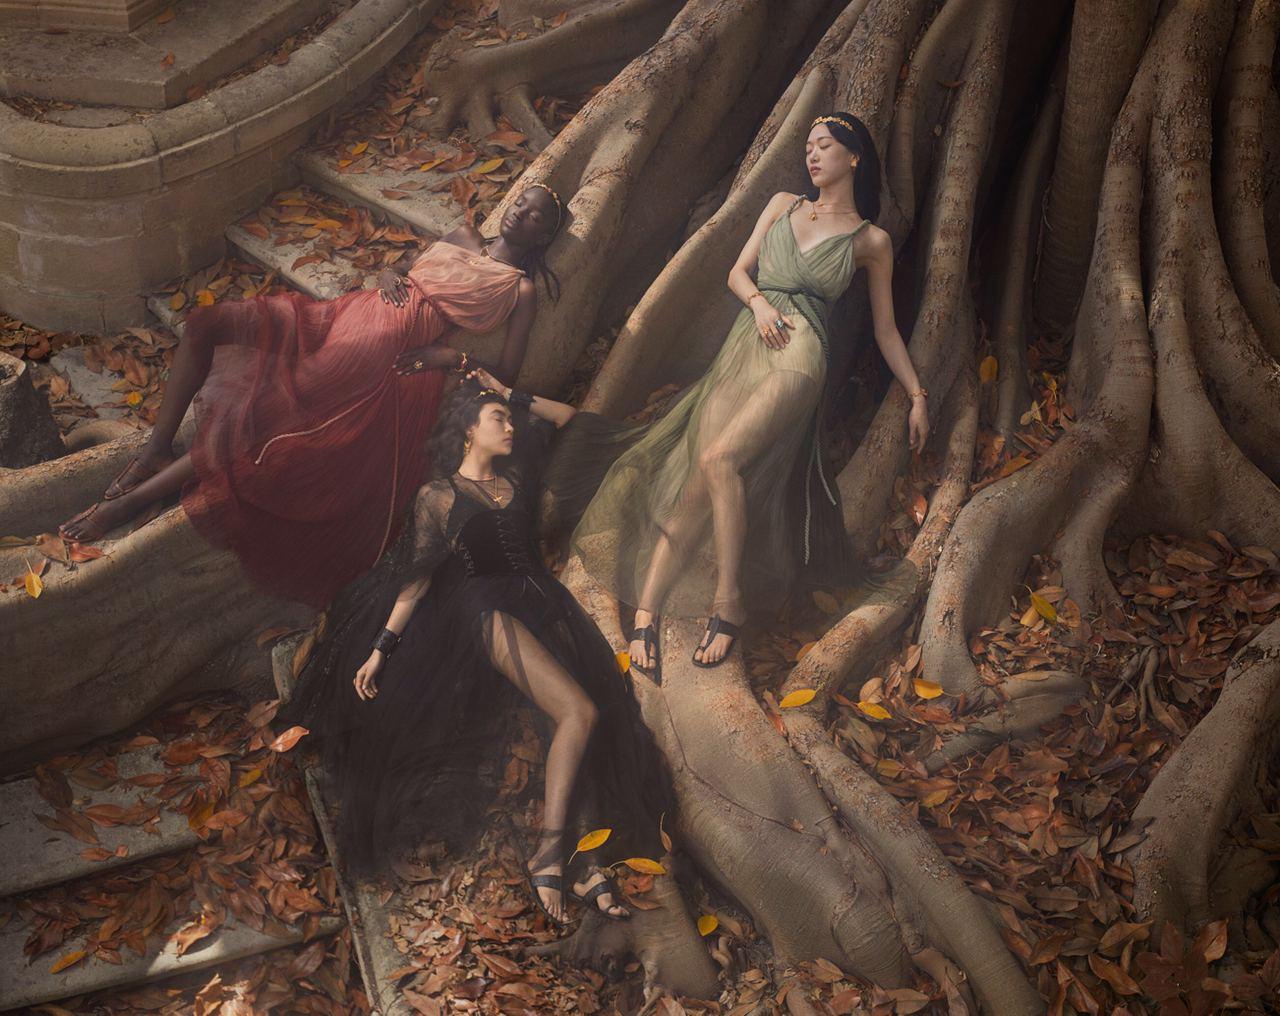 Итальянский народный танец под музыку композитора Паоло Буонвино — в новом ролике Dior 